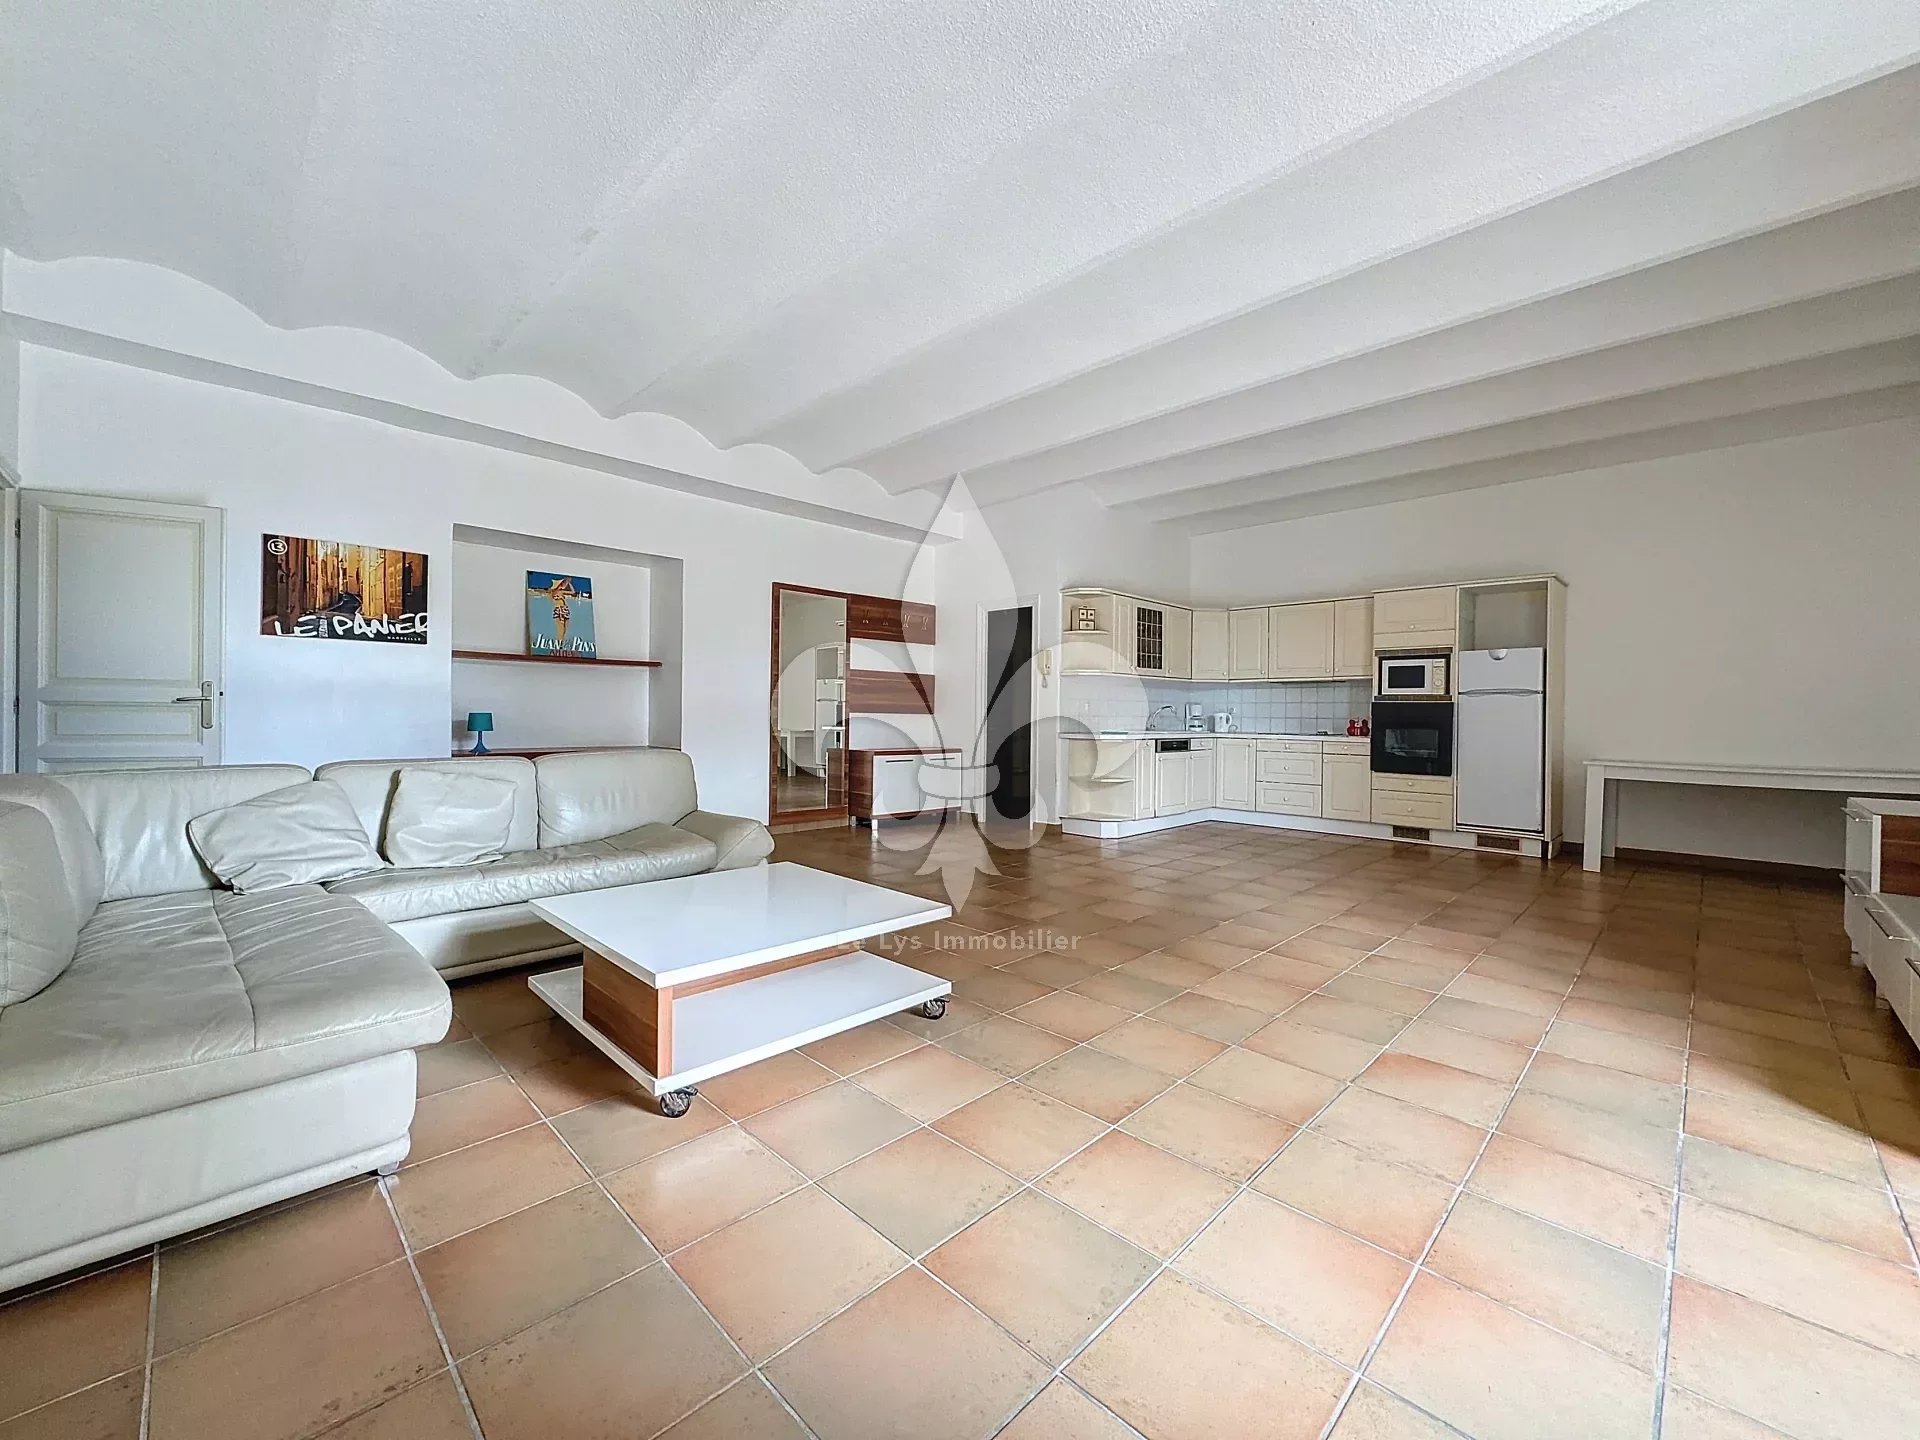 Vente Appartement 88m² 3 Pièces à Cannes (06400) - Le Lys Immobilier